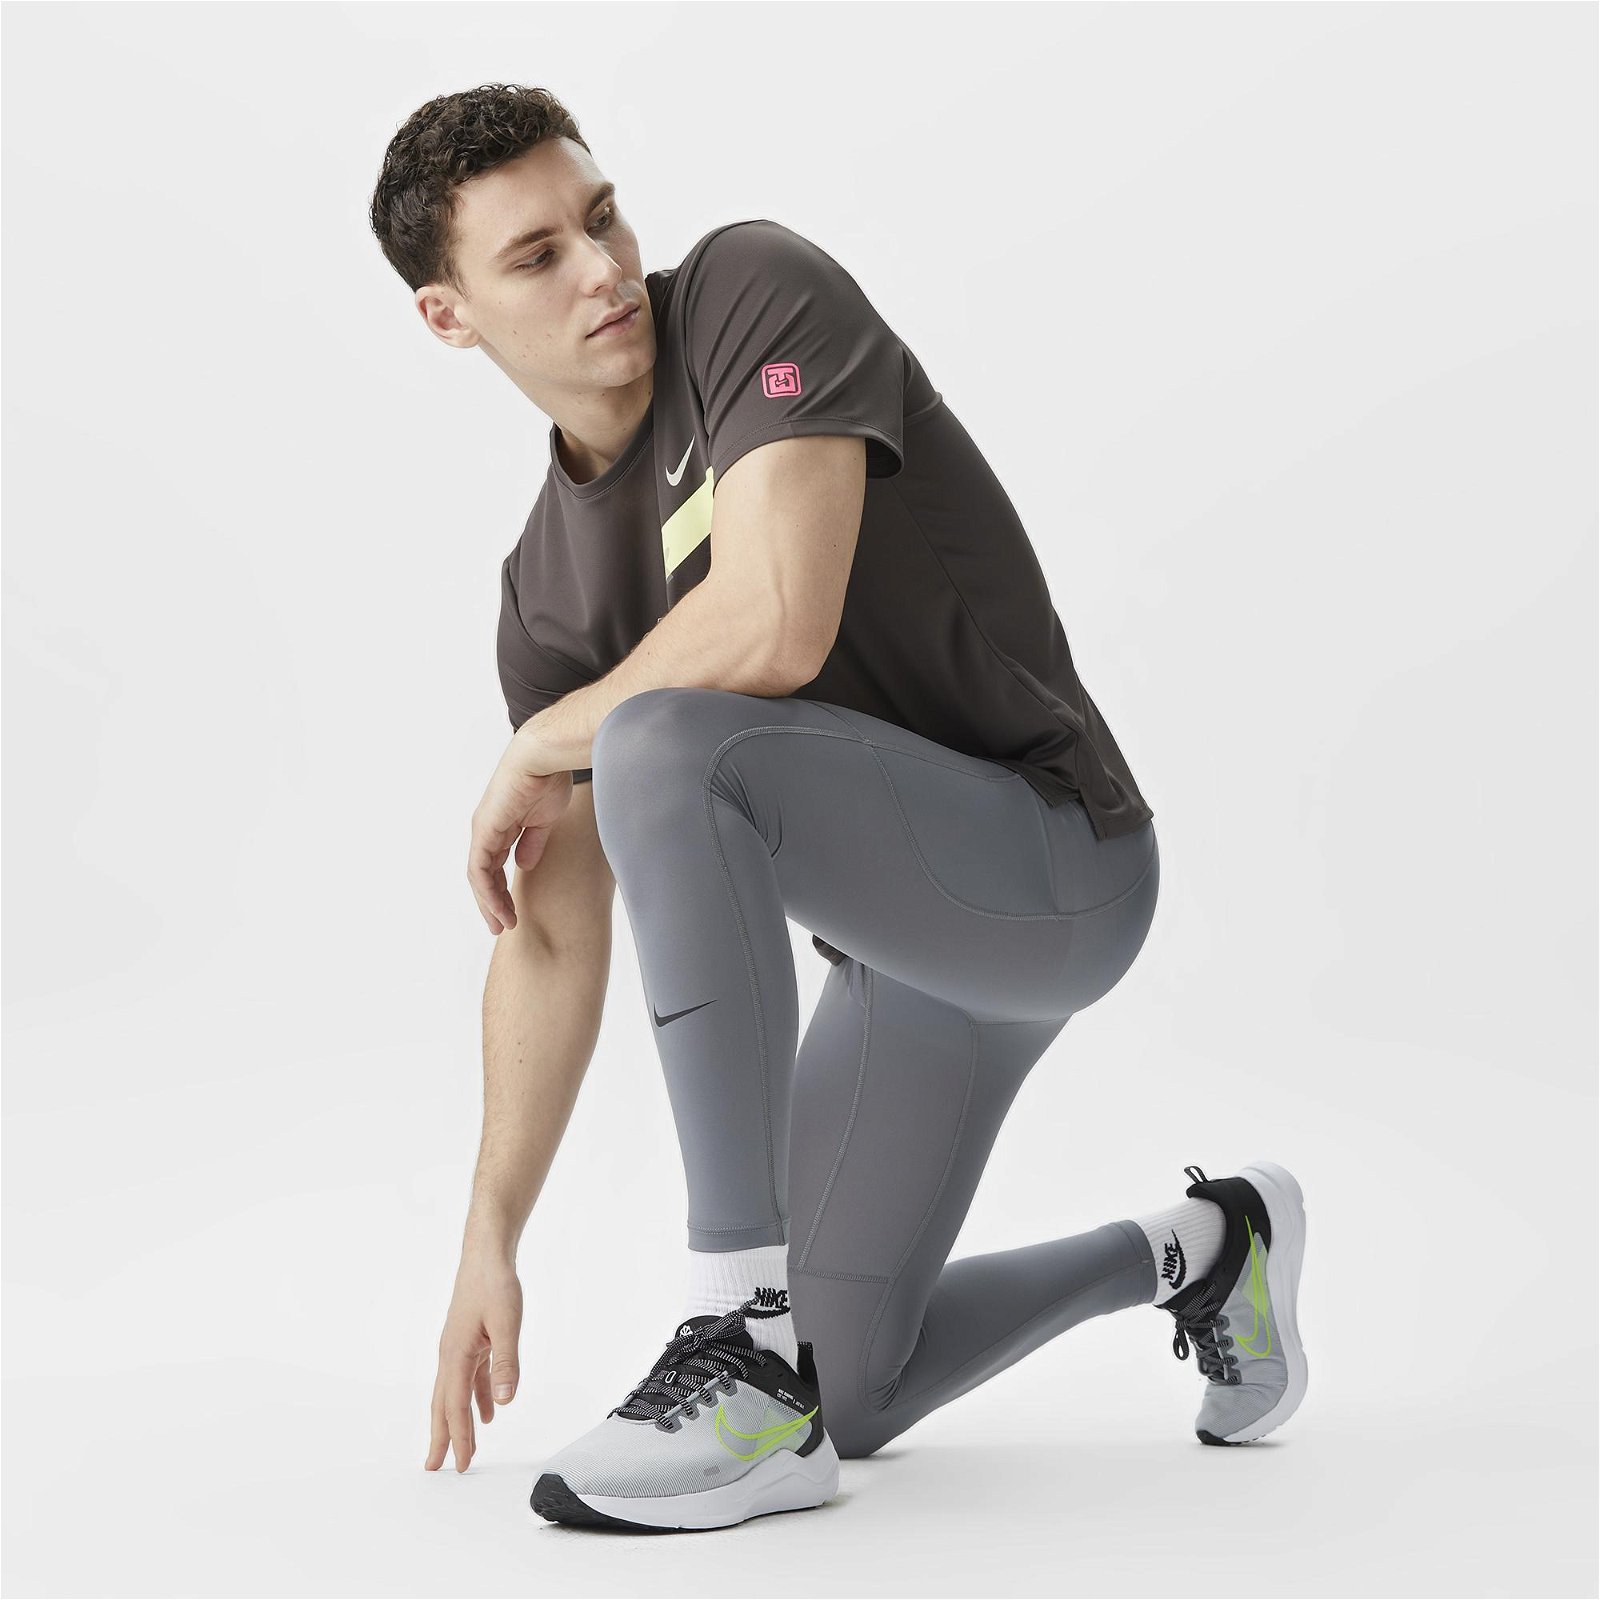 Nike Dri-Fit Pro Erkek Gri Tayt